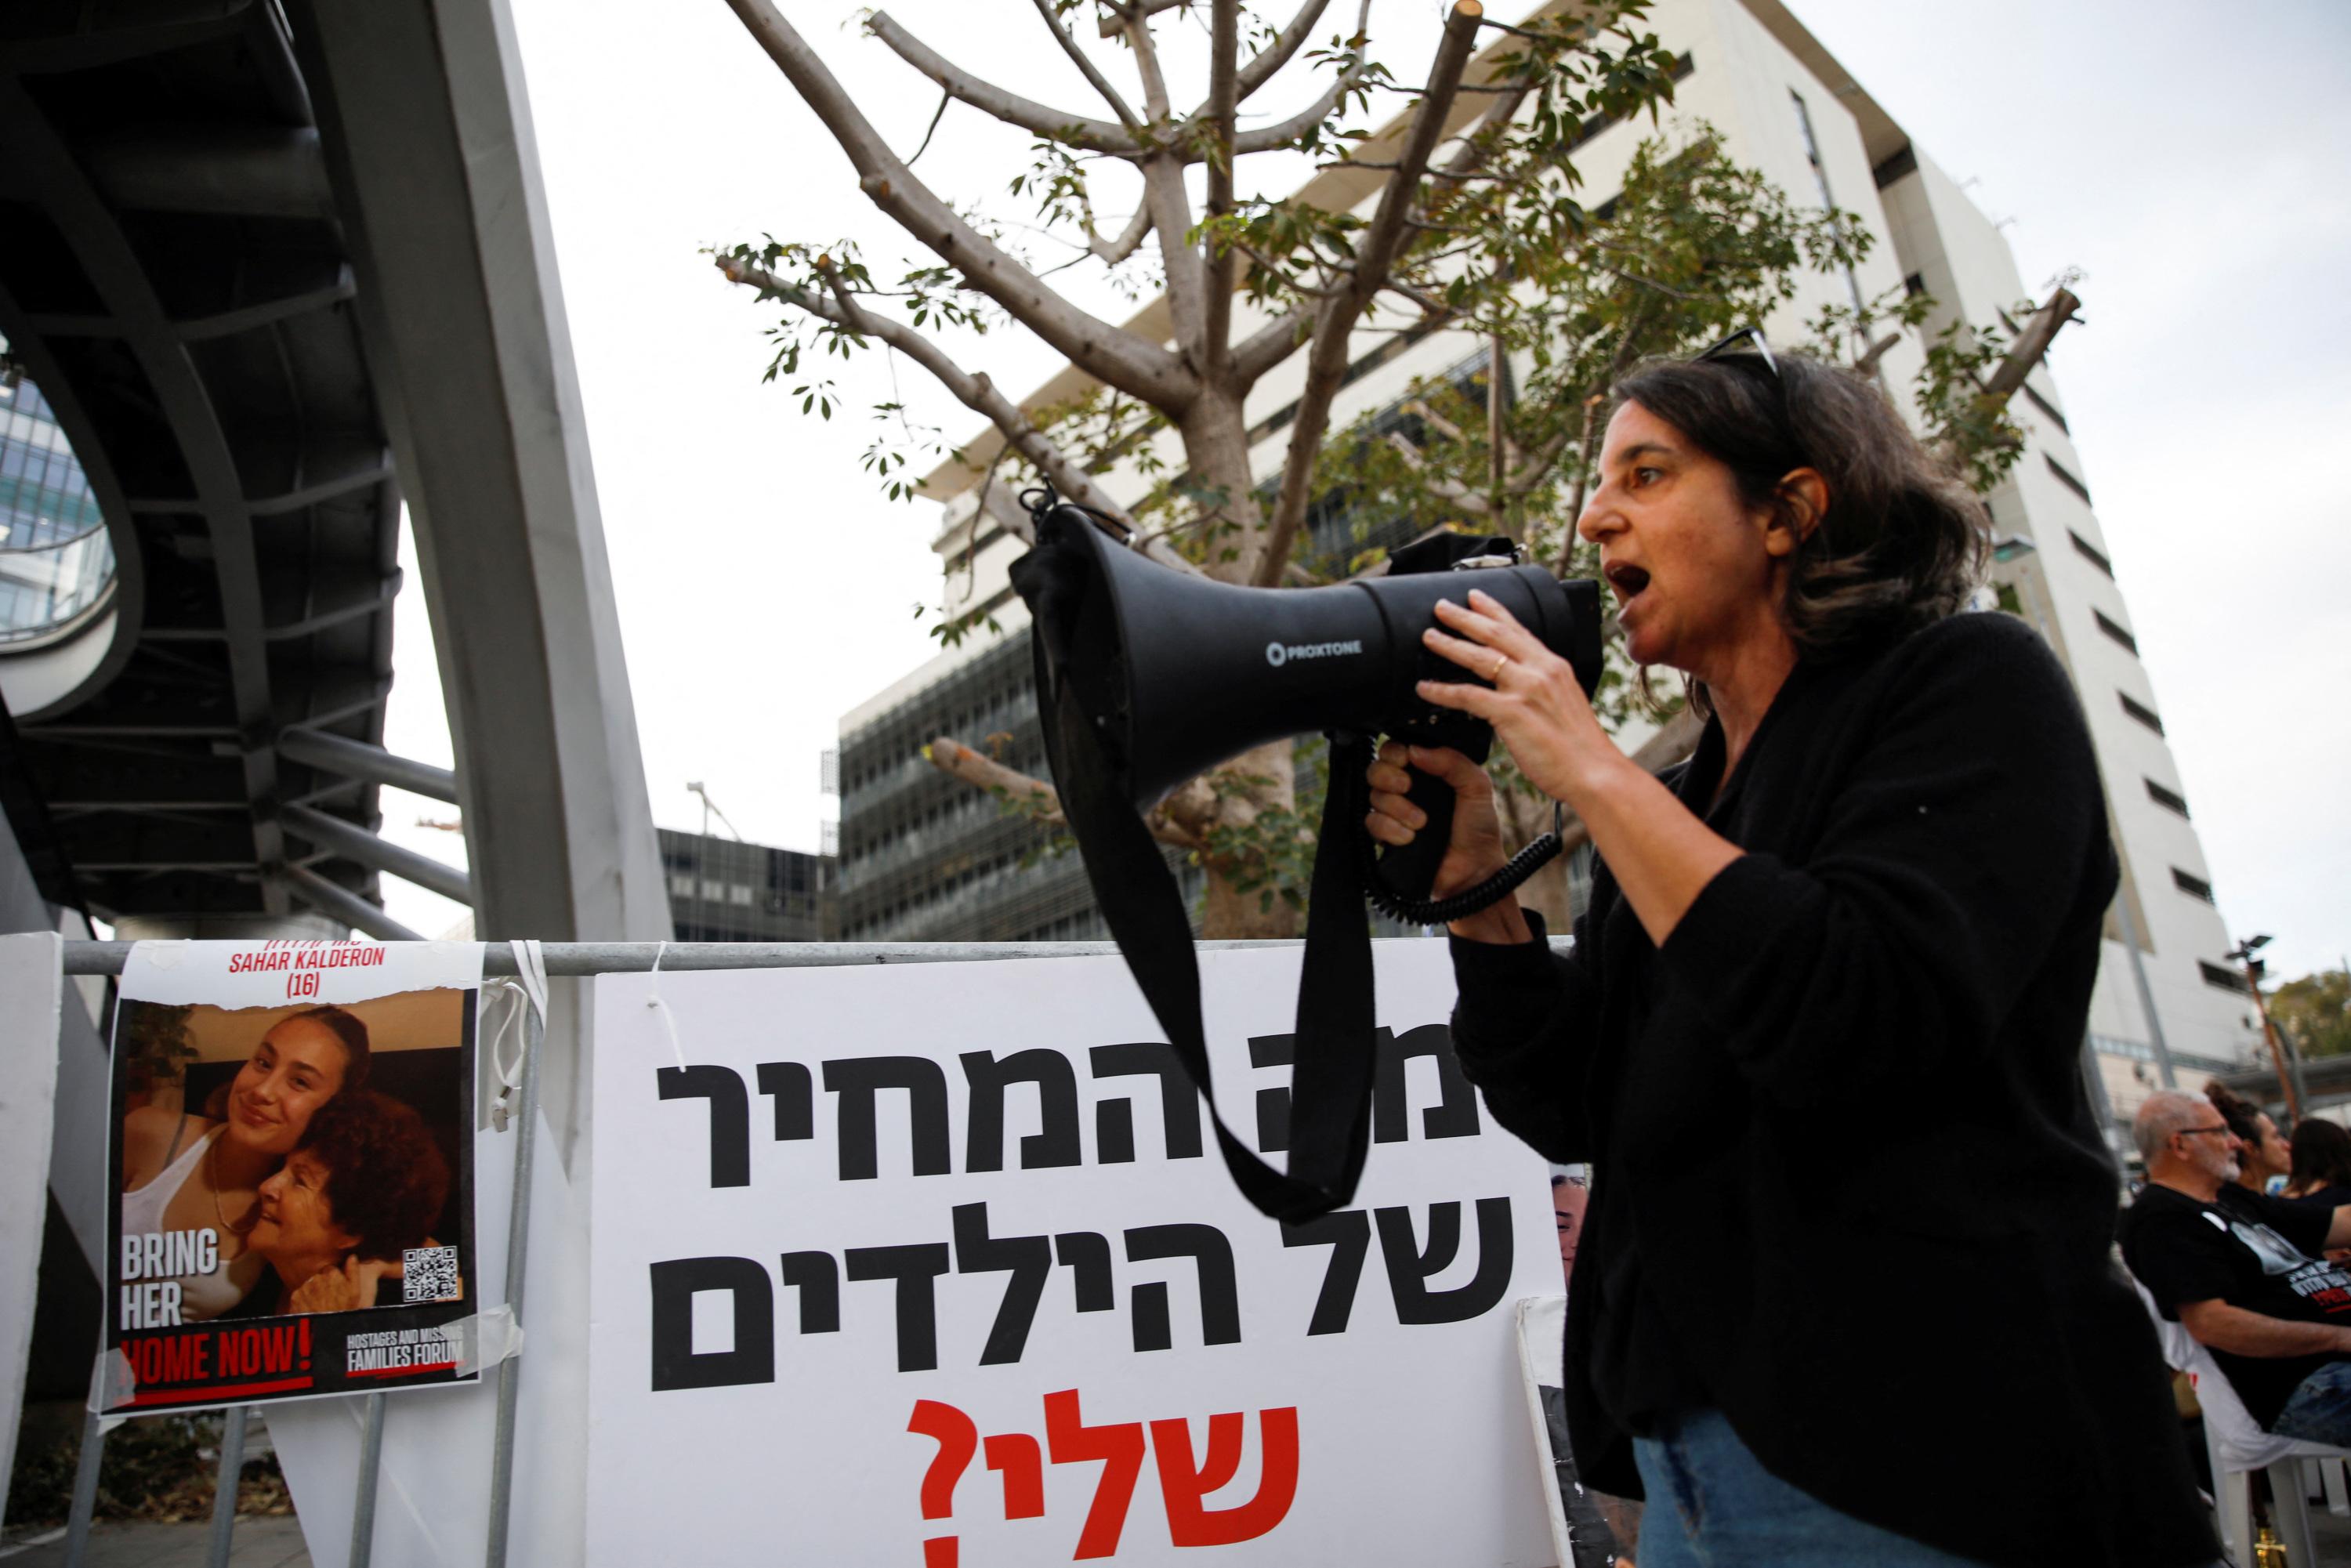 accord entre le hamas et israël : des voix s’élèvent au sein de l’état hébreu contre la libération des prisonniers palestiniens